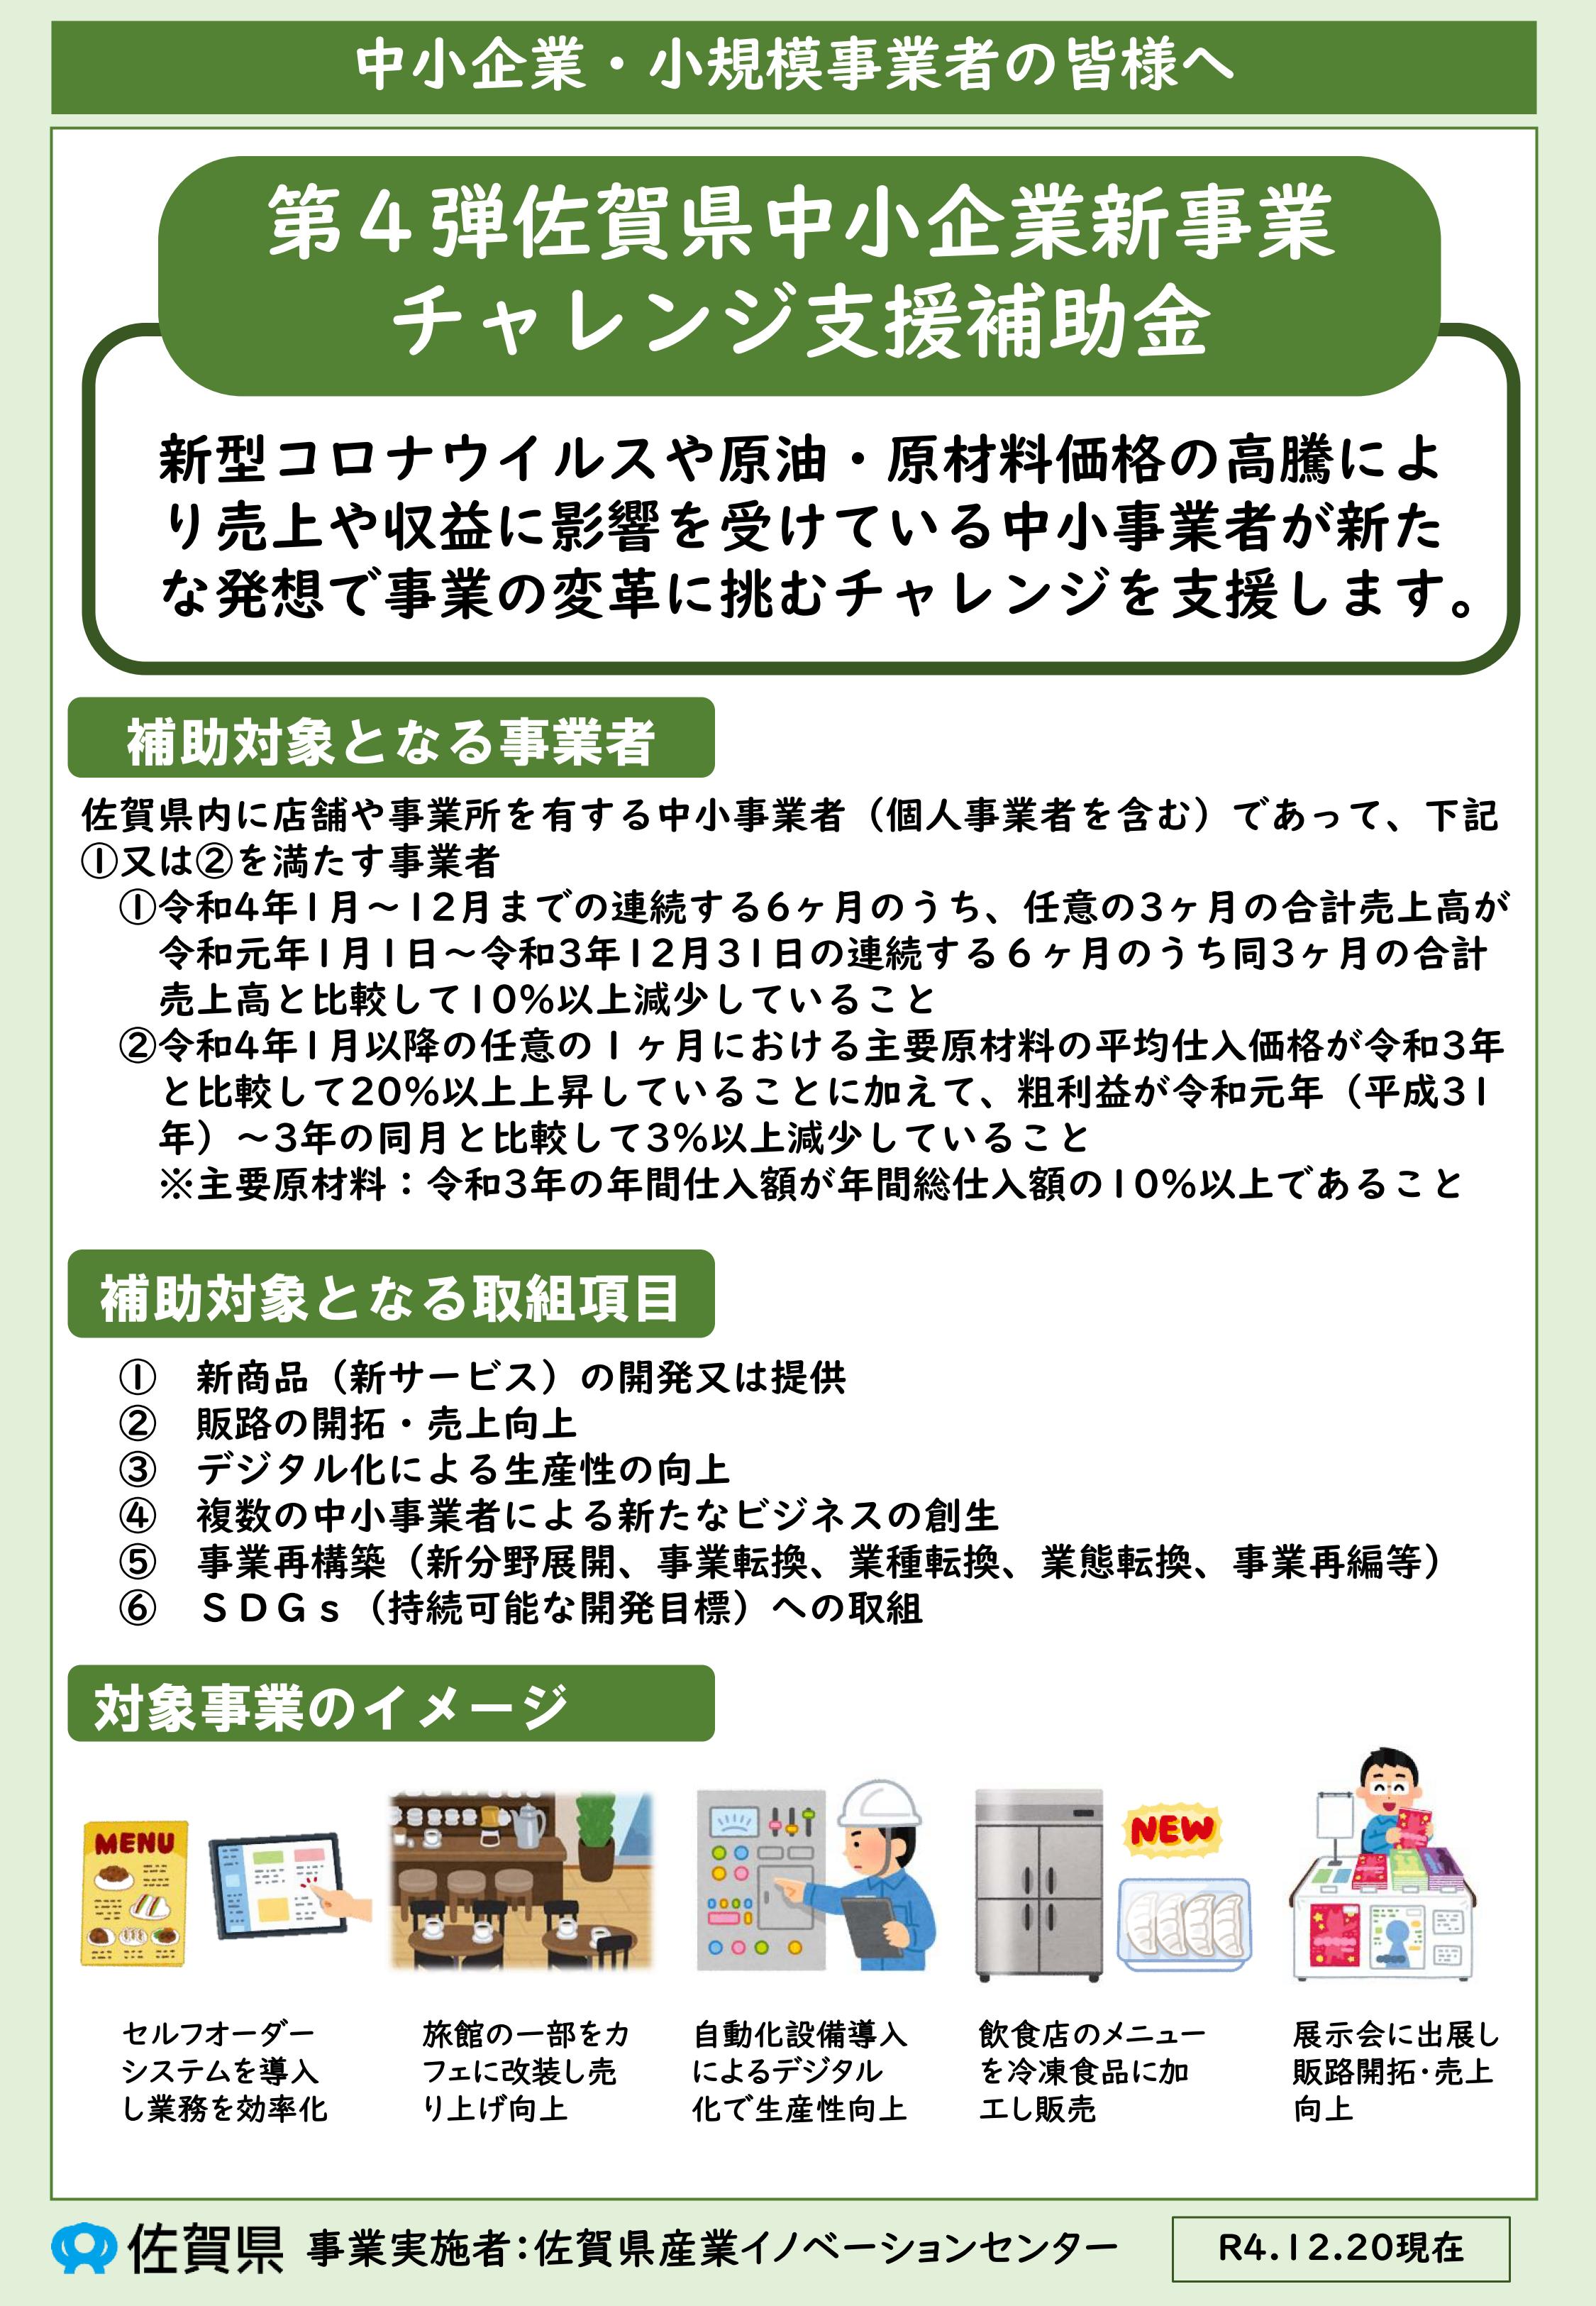 「第4弾佐賀県中小企業新事業チャレンジ支援補助金」について